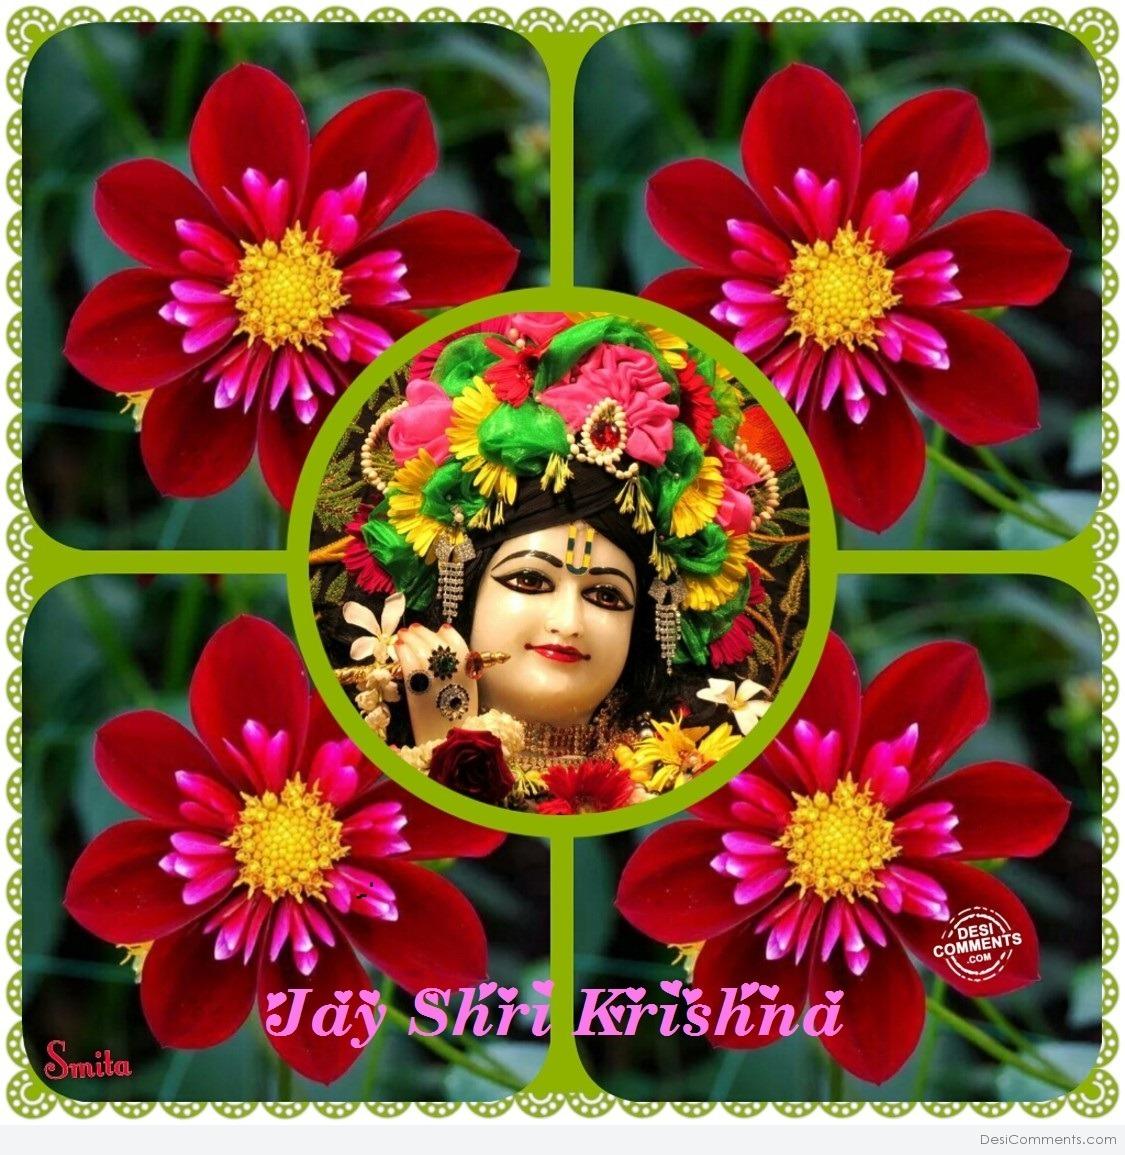 Jai Shri Krishna - DesiComments.com